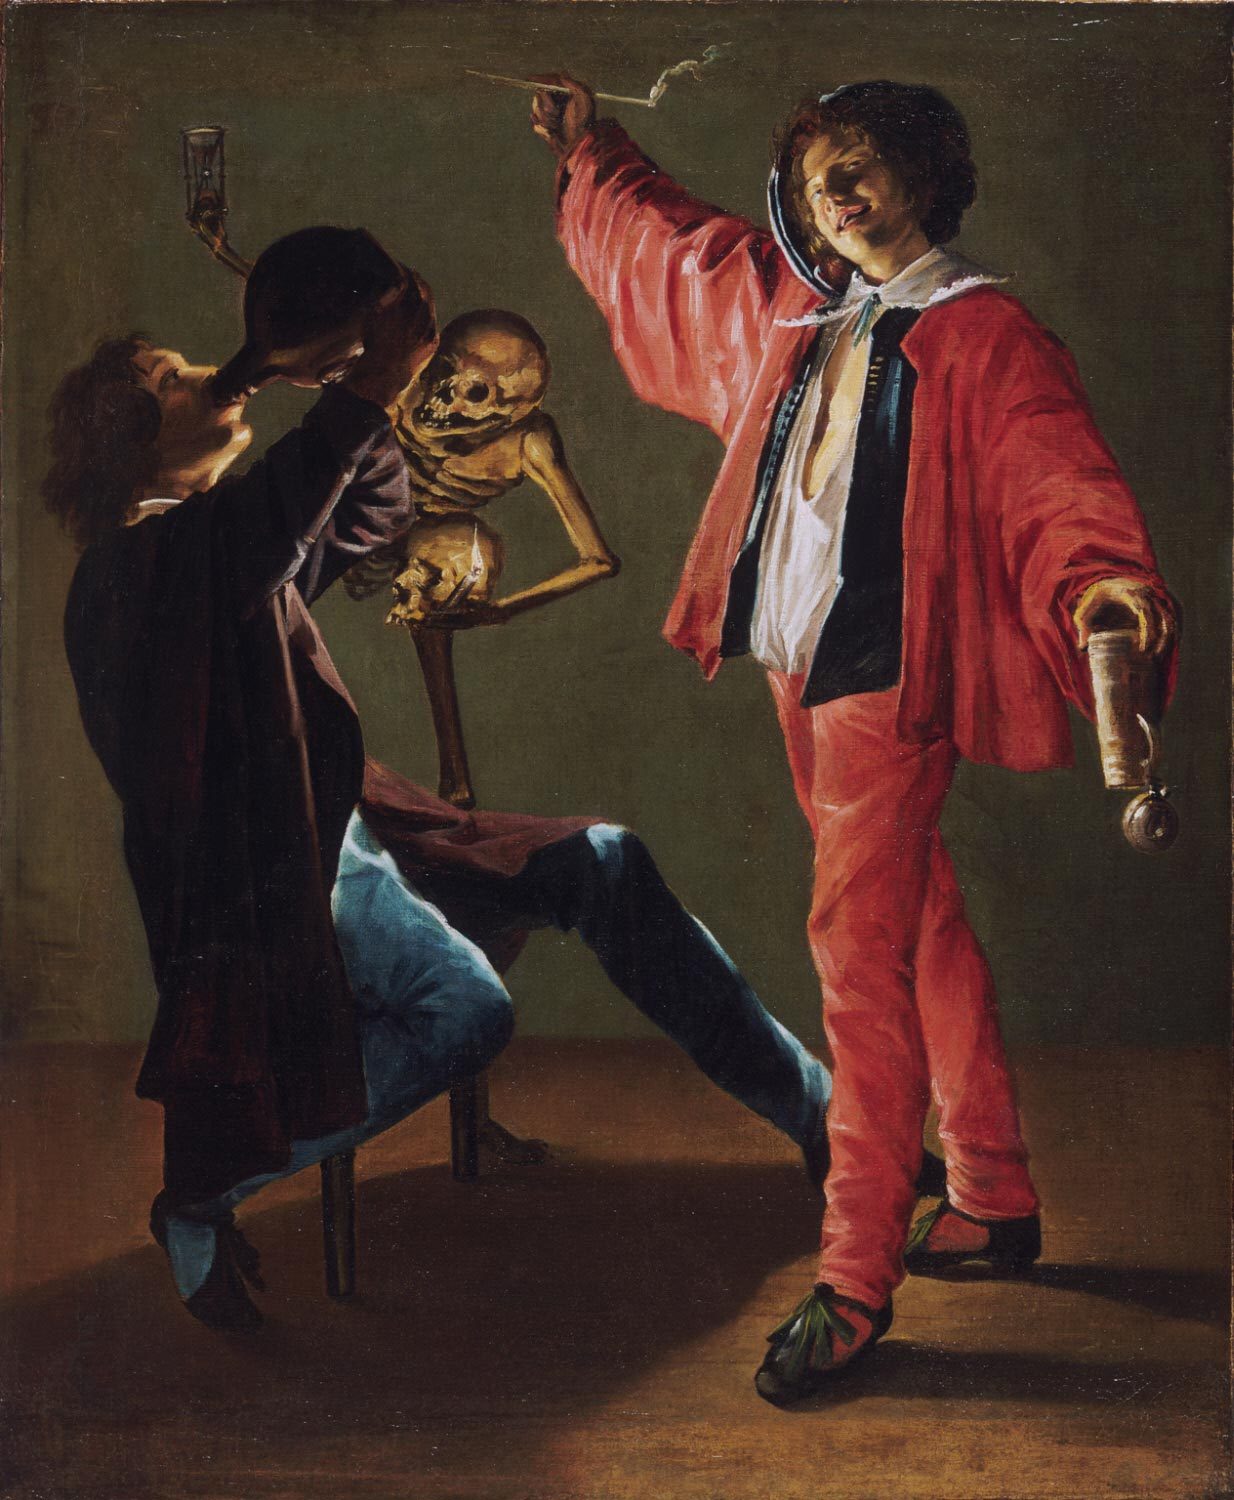 Judith Leyster (Dutch, 1609 - 1660): The Last Drop (The Gay Cavalier) (c. 1639) (via